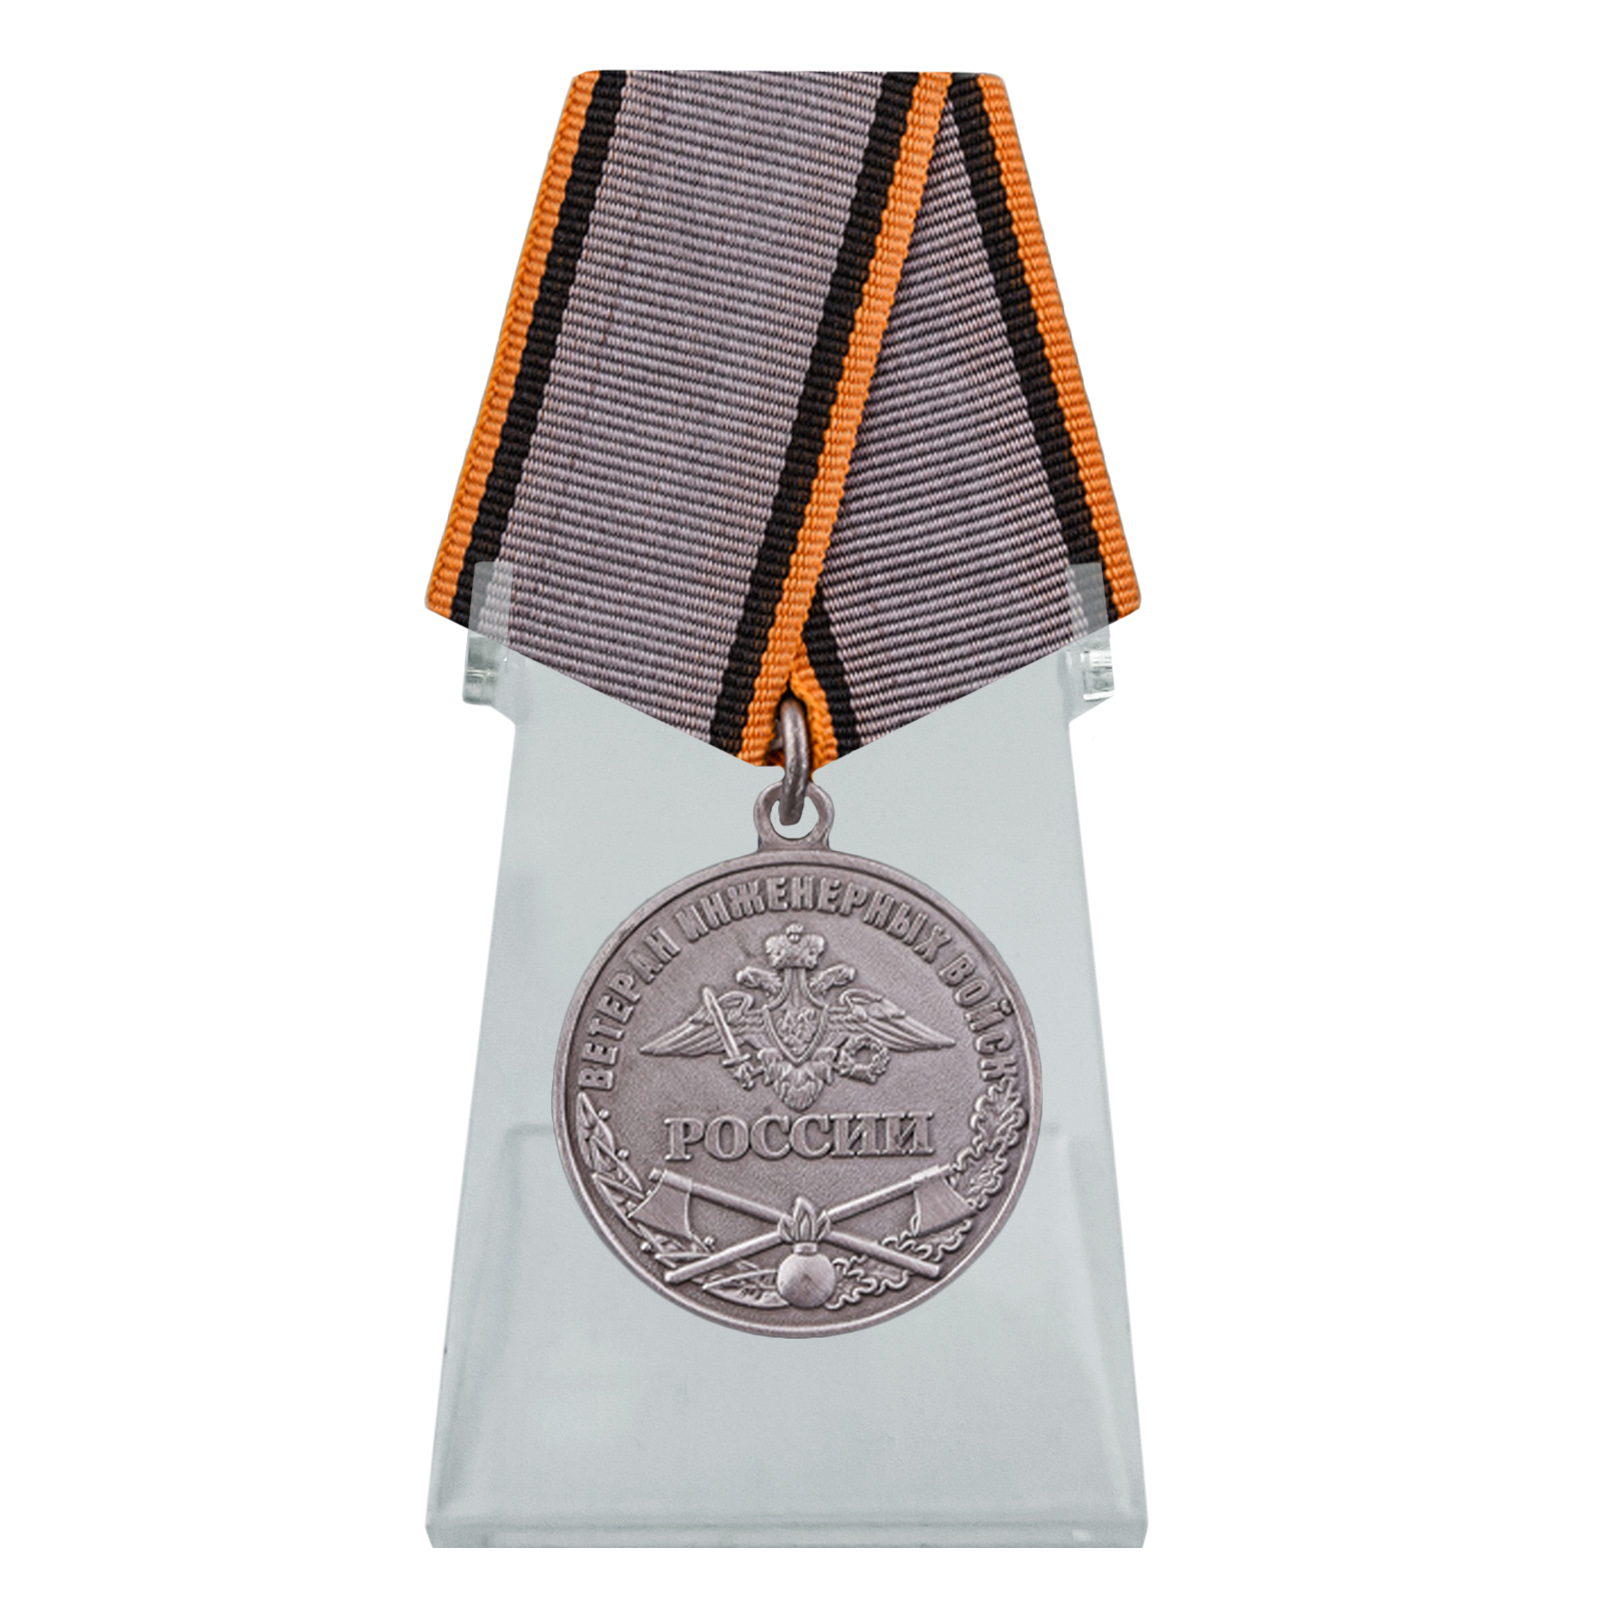 Медаль "Ветеран Инженерных войск" на подставке